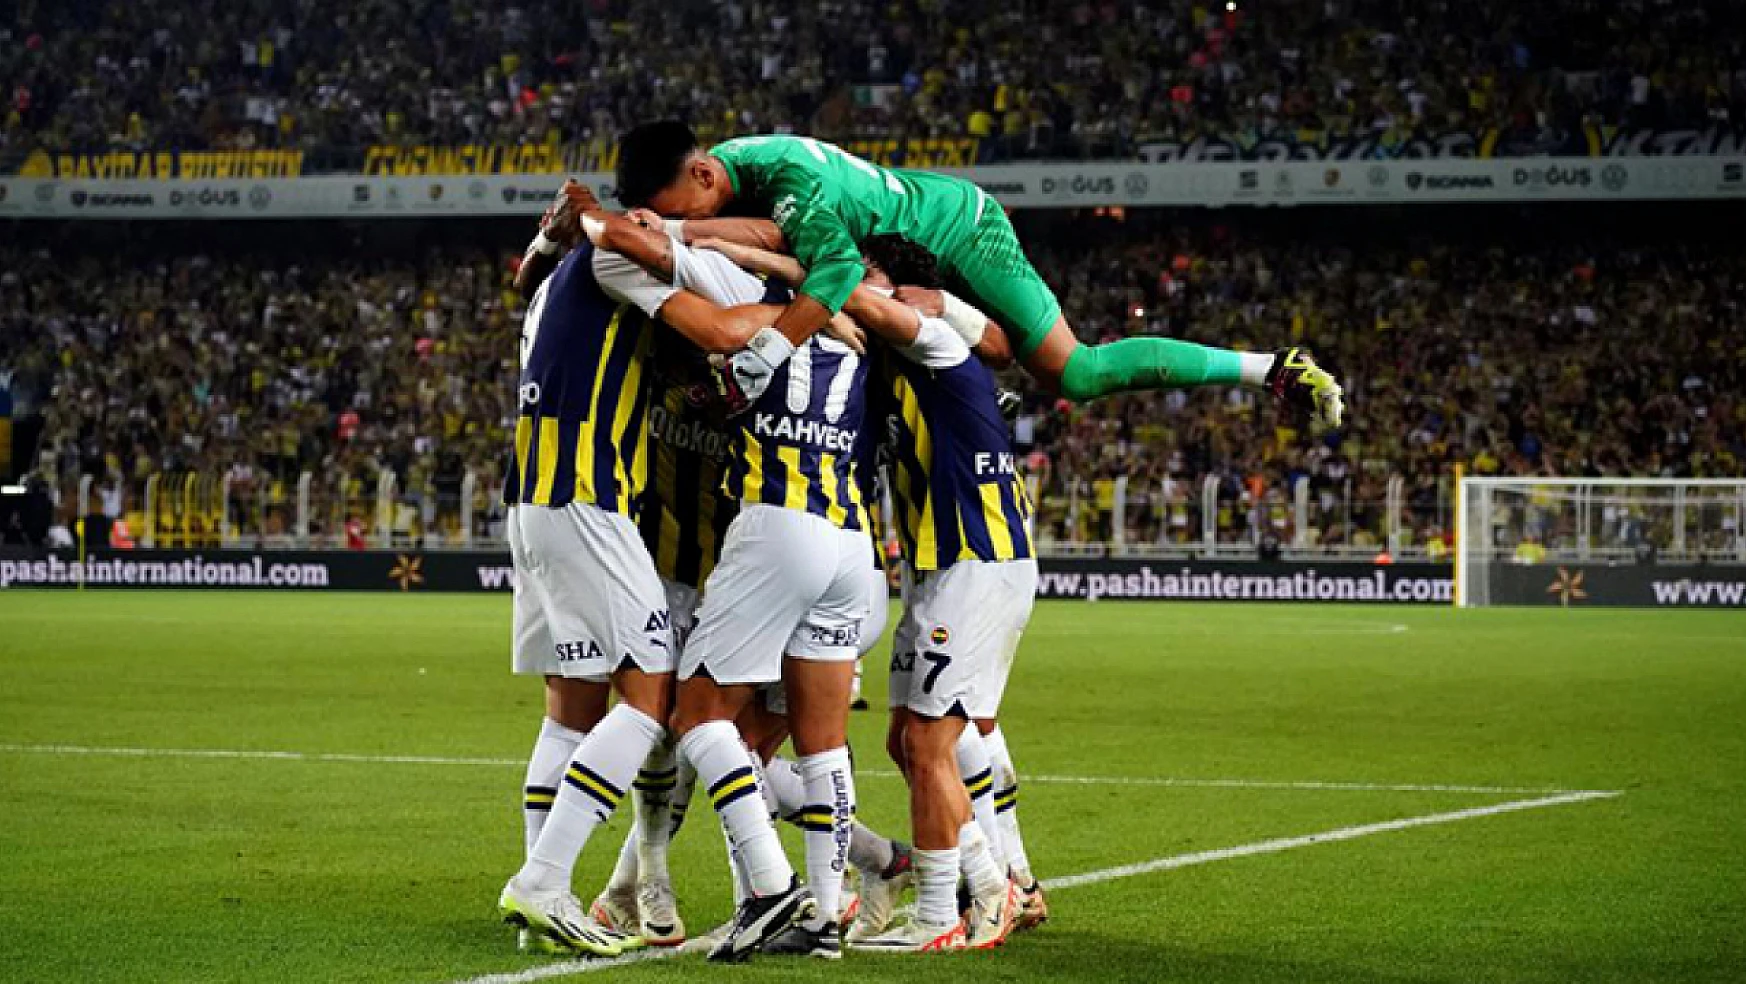 Fenerbahçe, Avrupa kupalarındaki 100. galibiyetini yaşadı